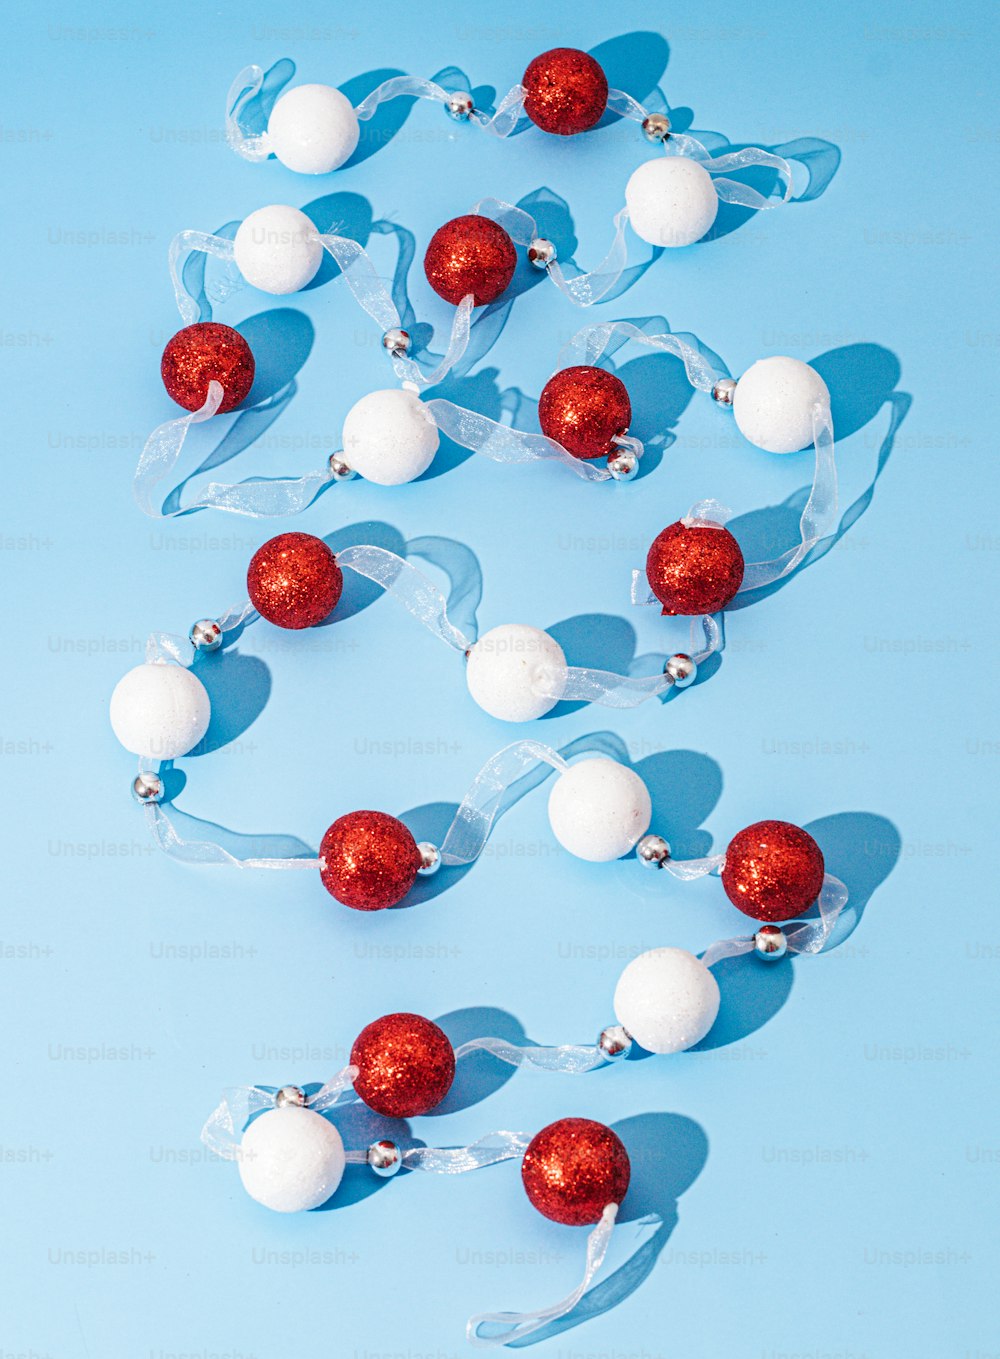 파란색 배경에 빨간색과 흰색 장식품 그룹